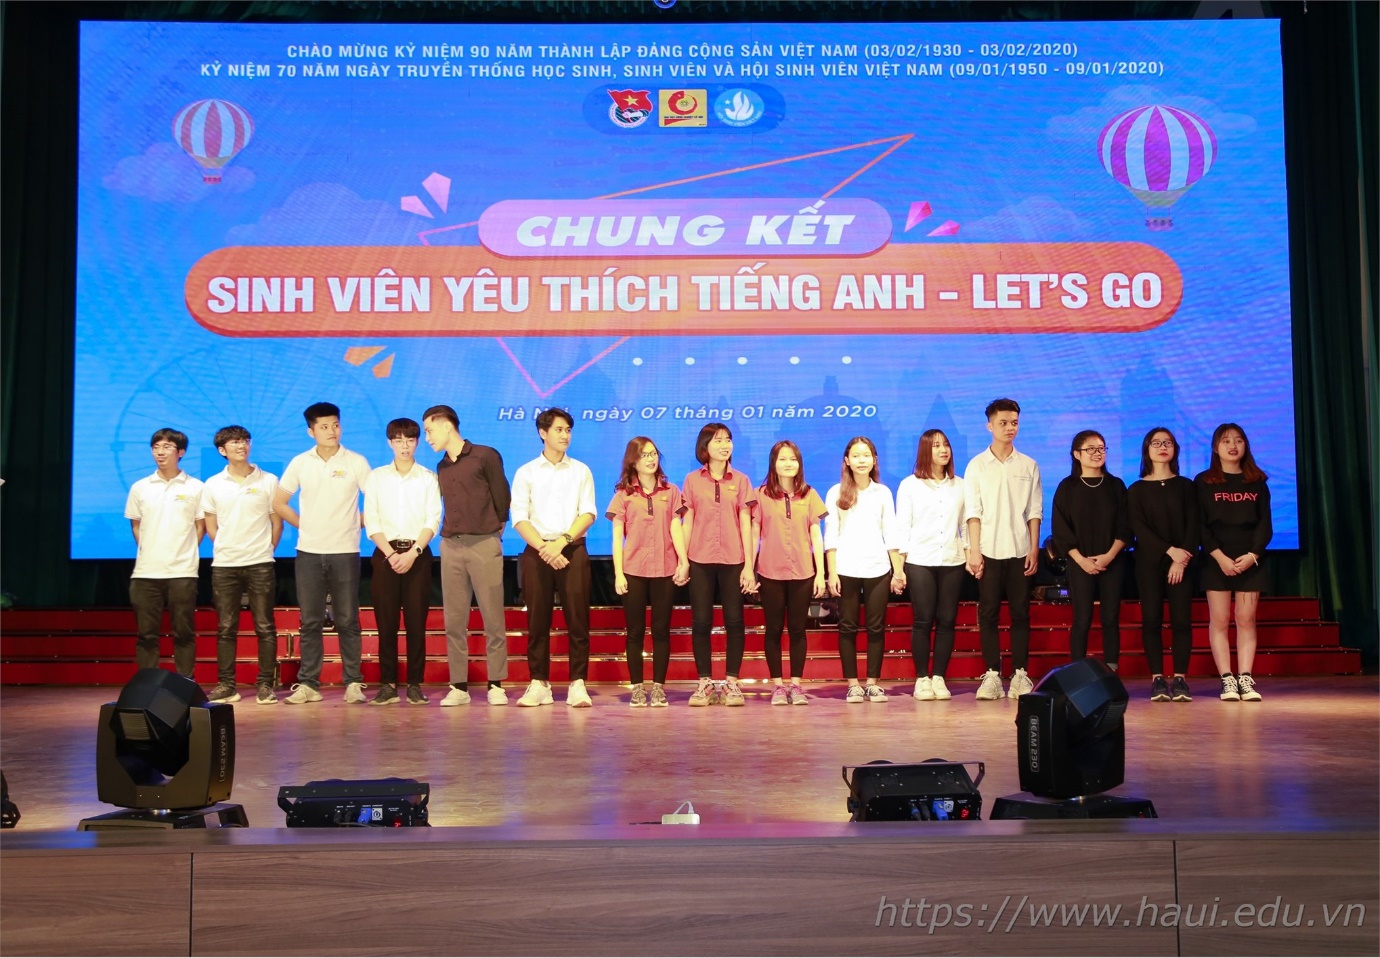 Đội sinh viên khoa Điện giành giải Nhất cuộc thi “Sinh viên yêu thích tiếng Anh Let's Go” 2019